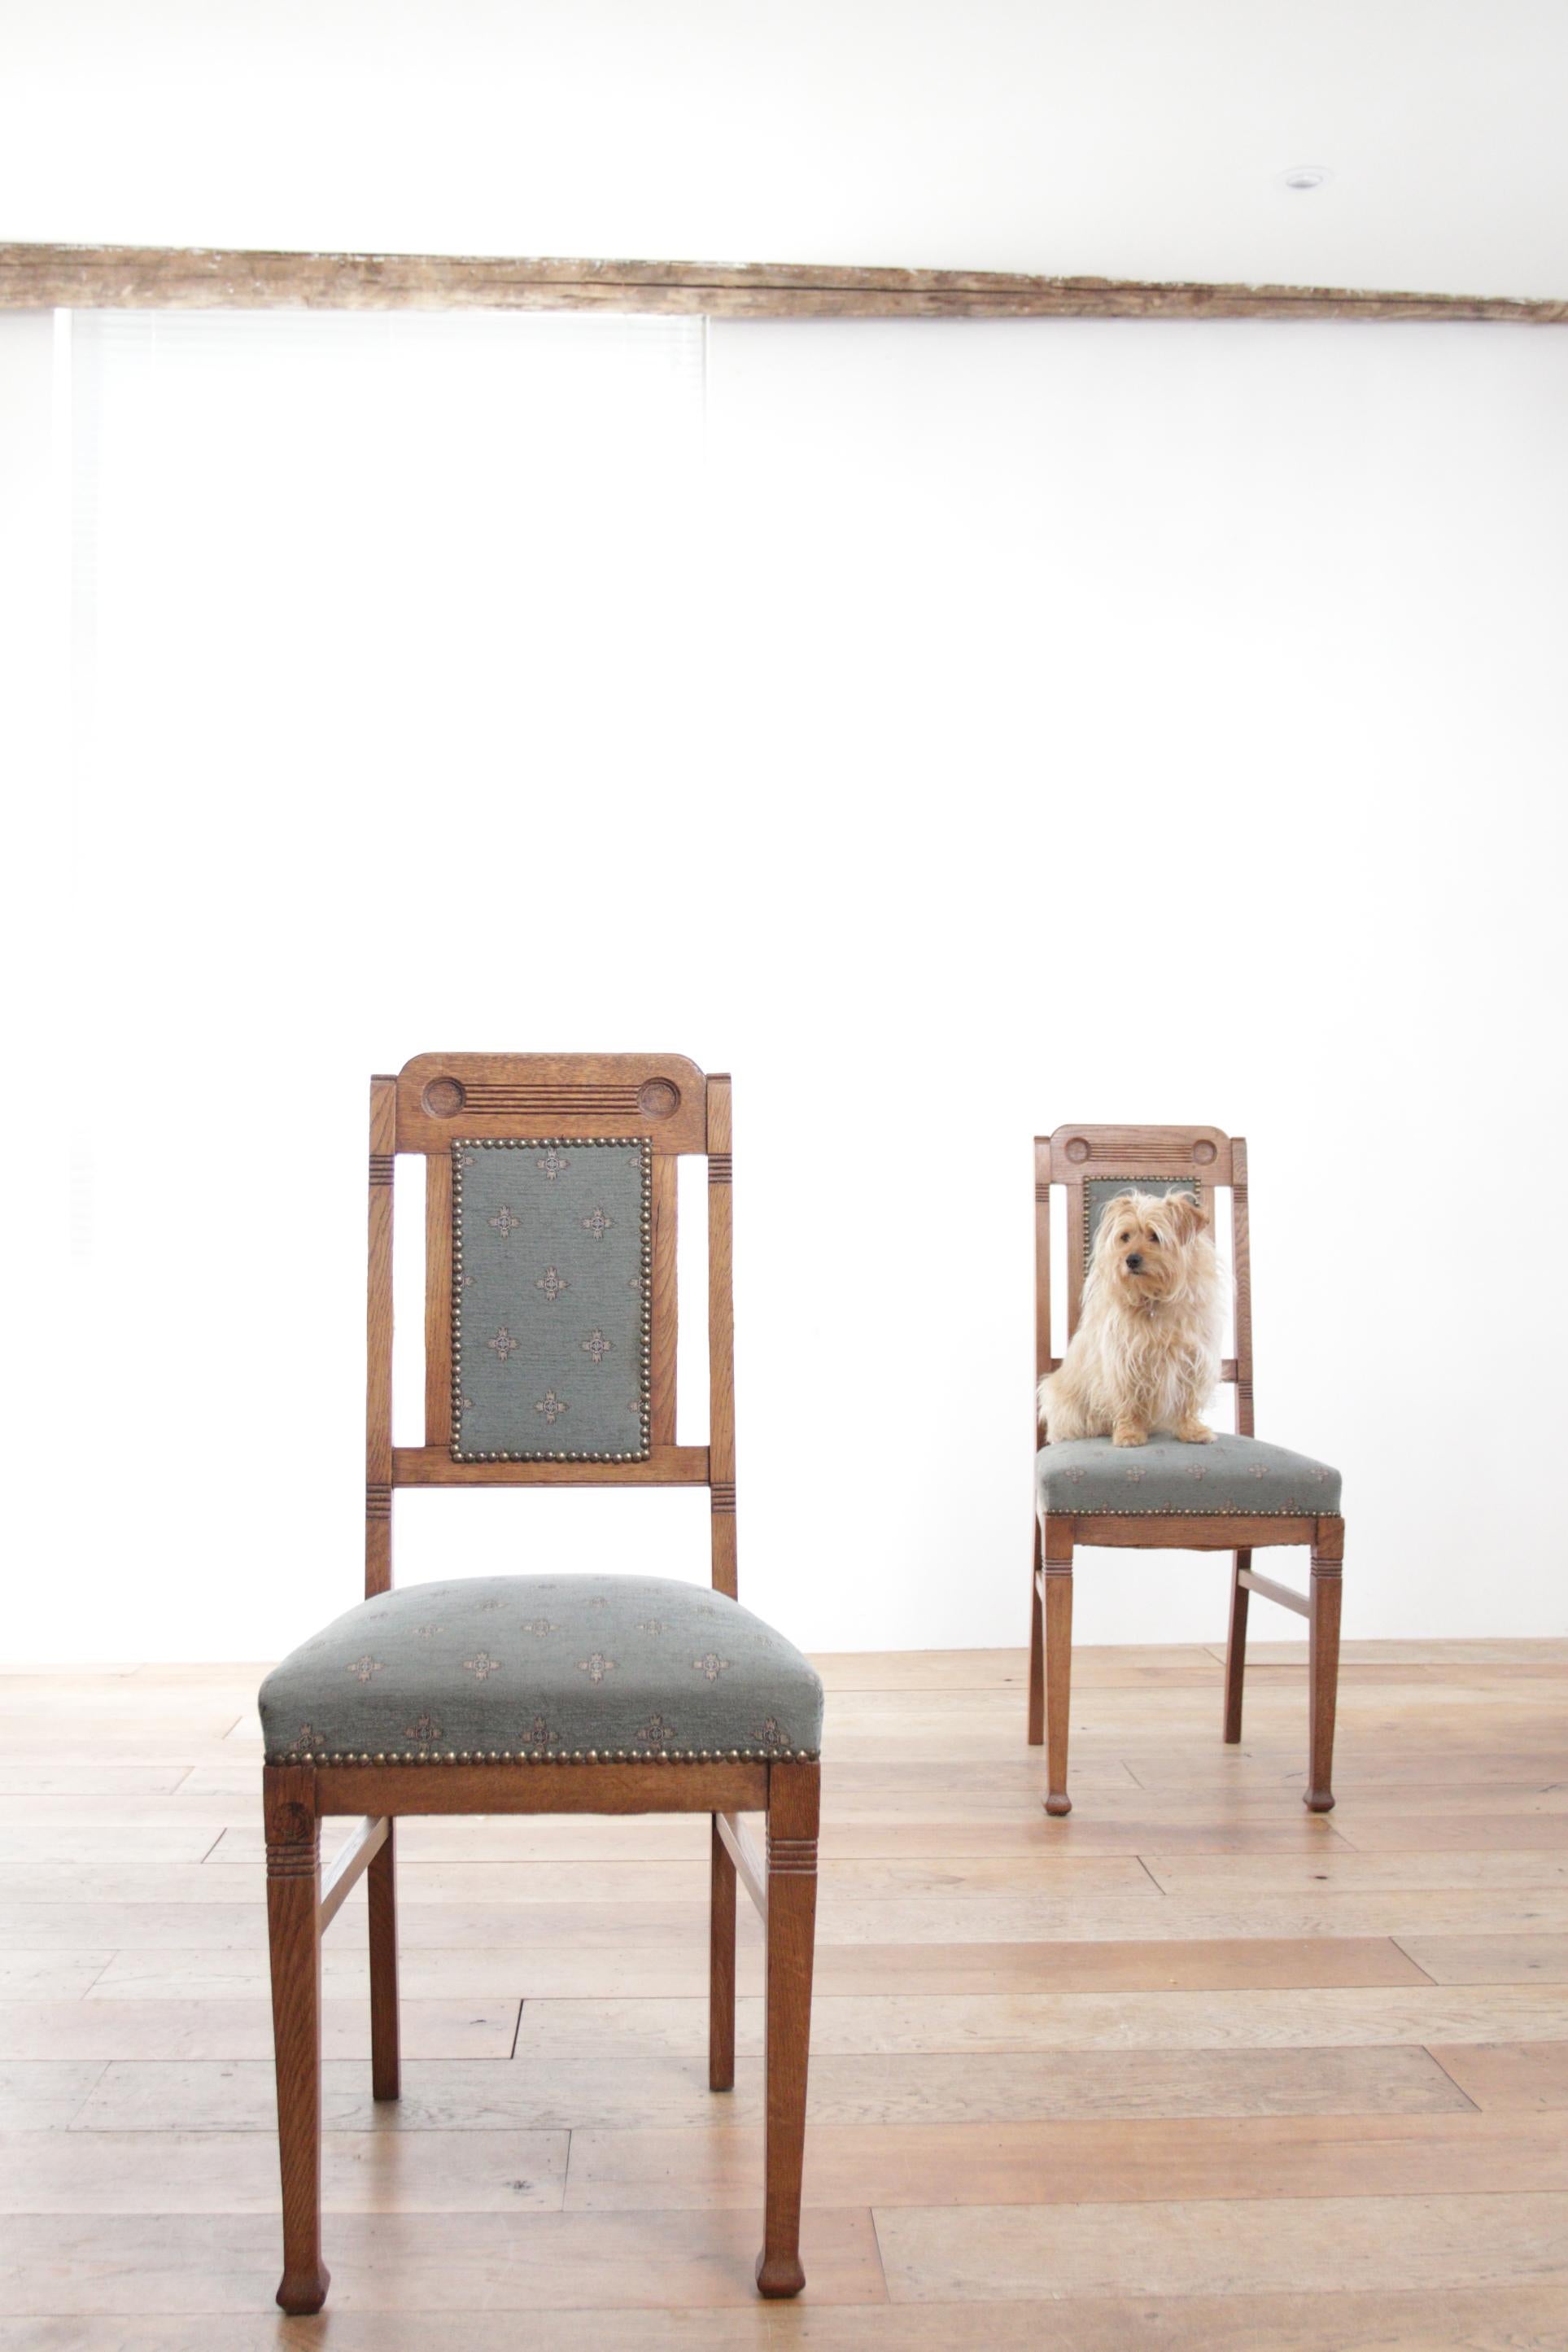 Deux très belles chaises d'appoint anciennes fabriquées en France vers les années 1930.
Ces deux chaises d'appoint sont d'excellents exemples du style Art déco français, qui s'est épanoui dans les années 1920 et 1930. Les chaises ont un design